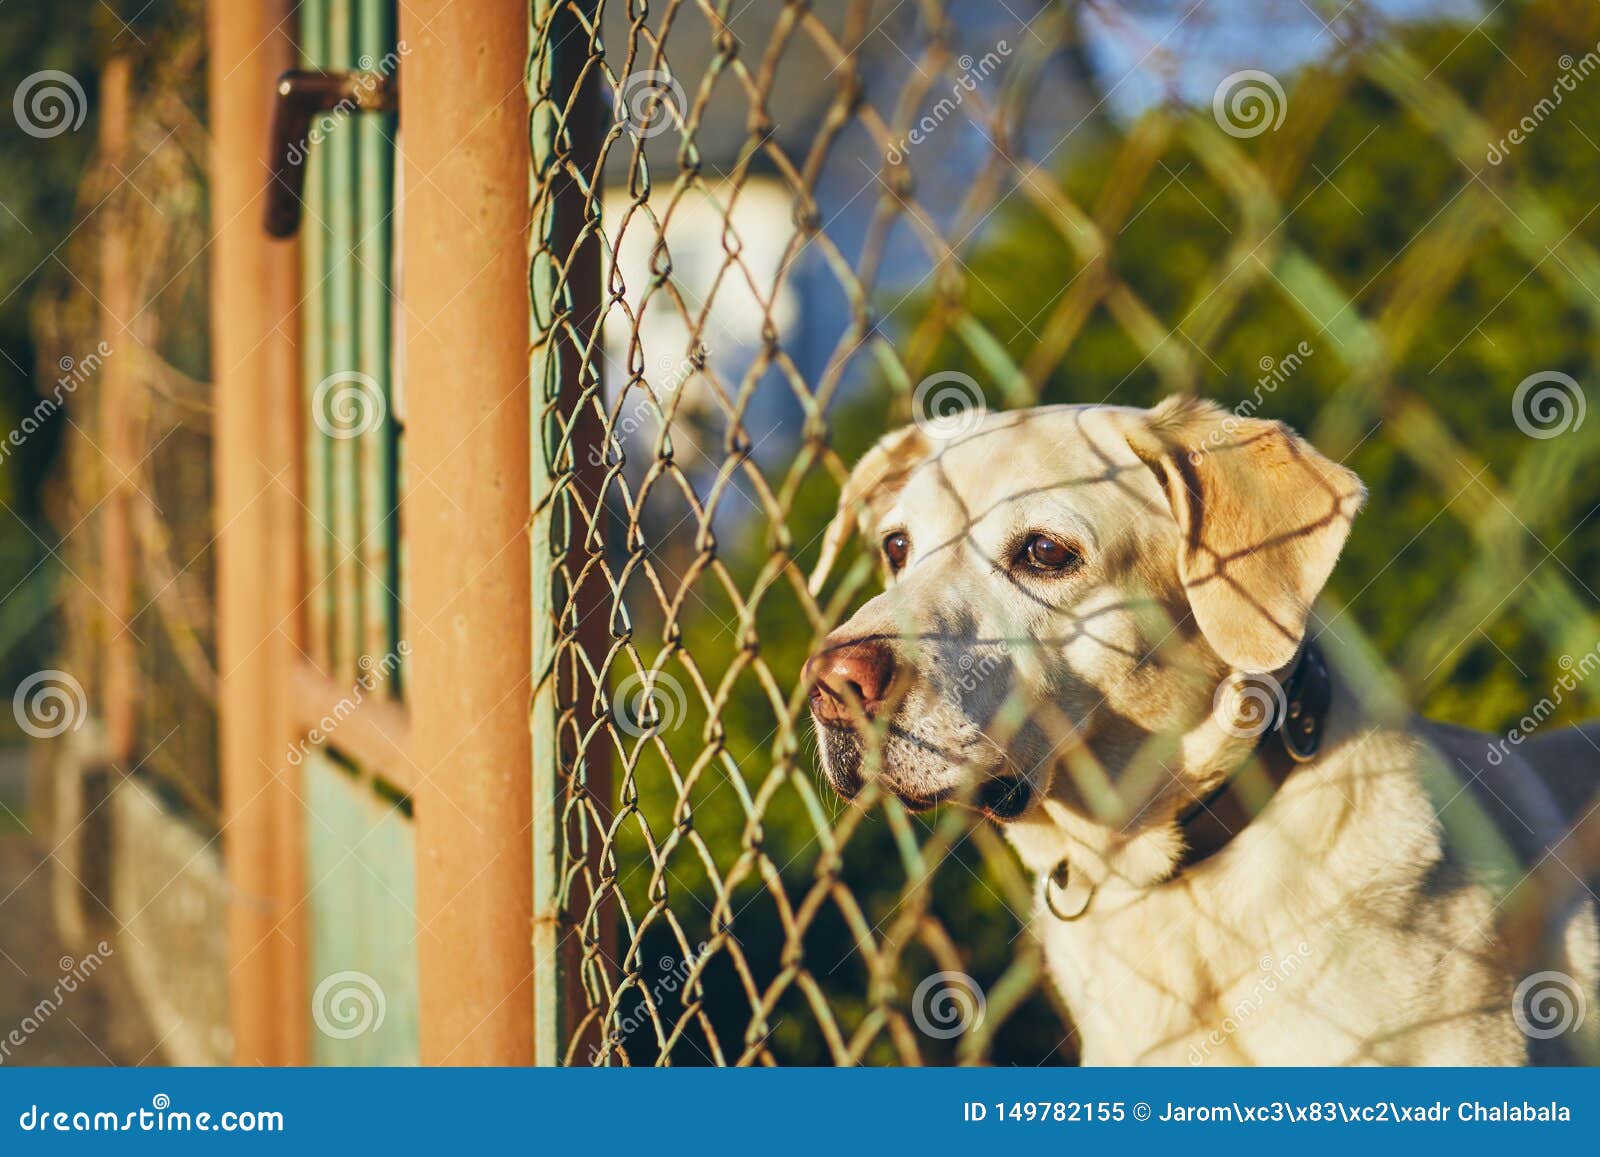 Dog waiting behind fence stock image. Image of boredom ...